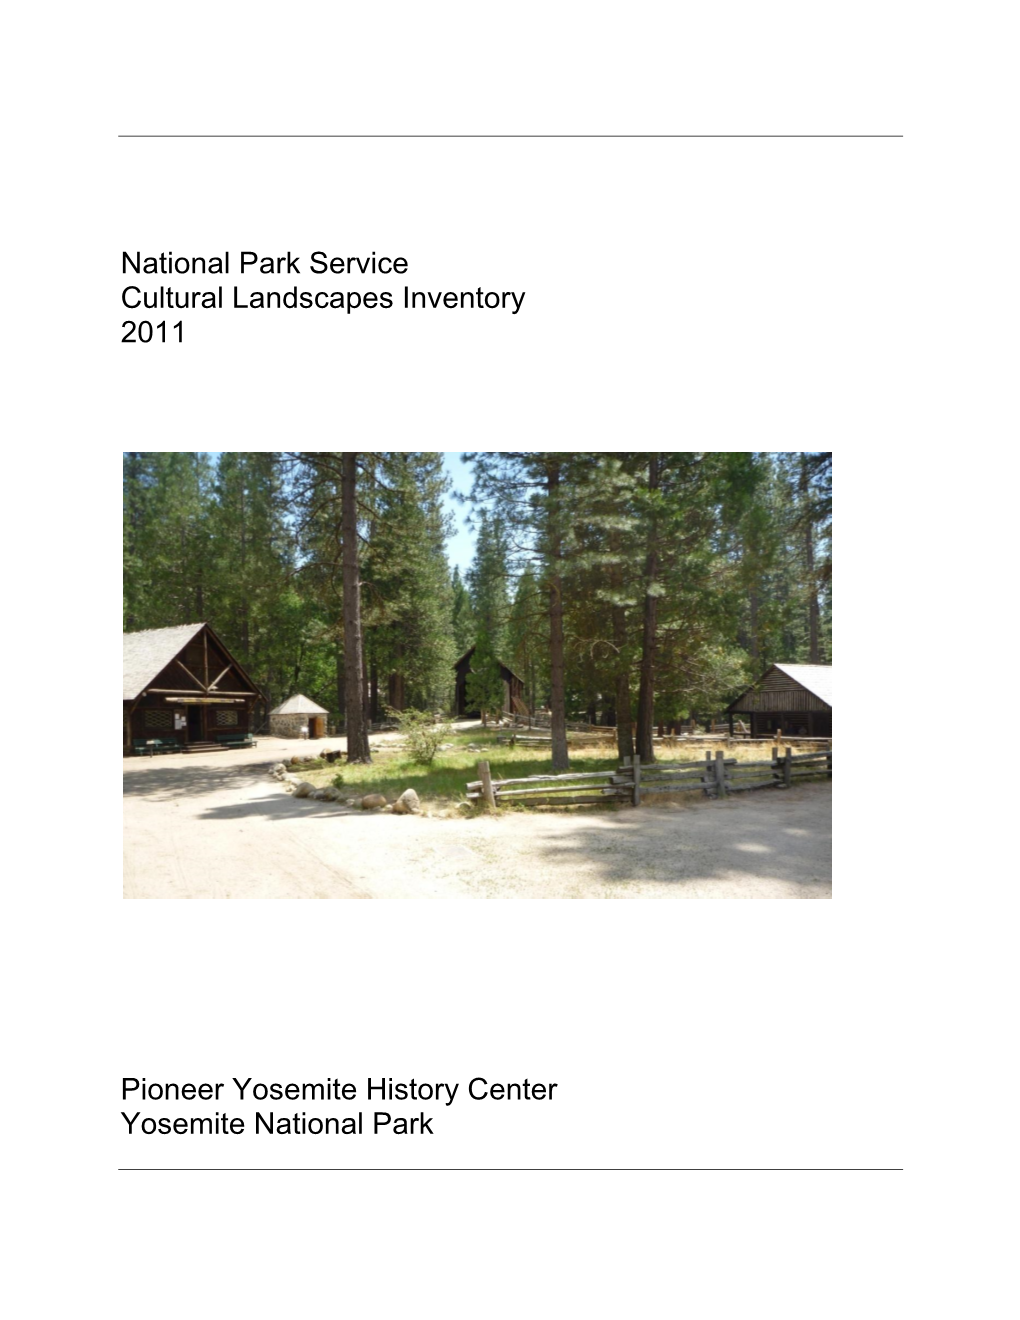 Pioneer Yosemite History Center, Yosemite